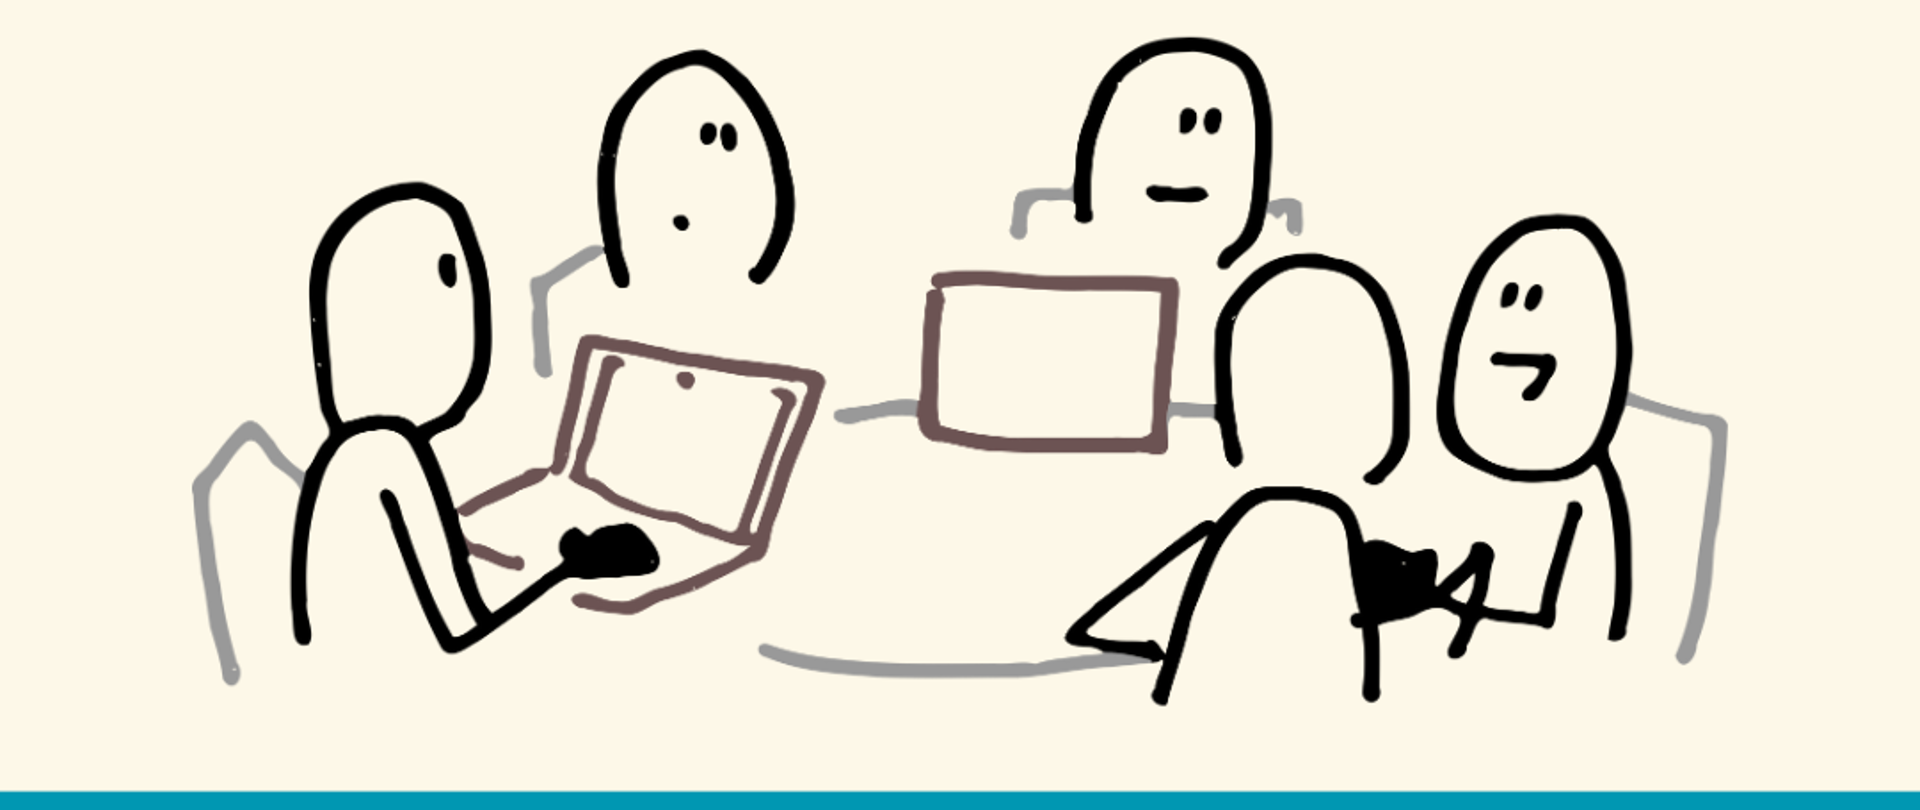 na jasno-beżowym tle u góry czarny napis, a pod nim grafika przedstawiająca rysy siedzących osób przy okrągłym stole, niektórzy przed laptopami. Poniżej na niebieskim tle białe napisy, w lewym dolnym rogu białe logo szkoły